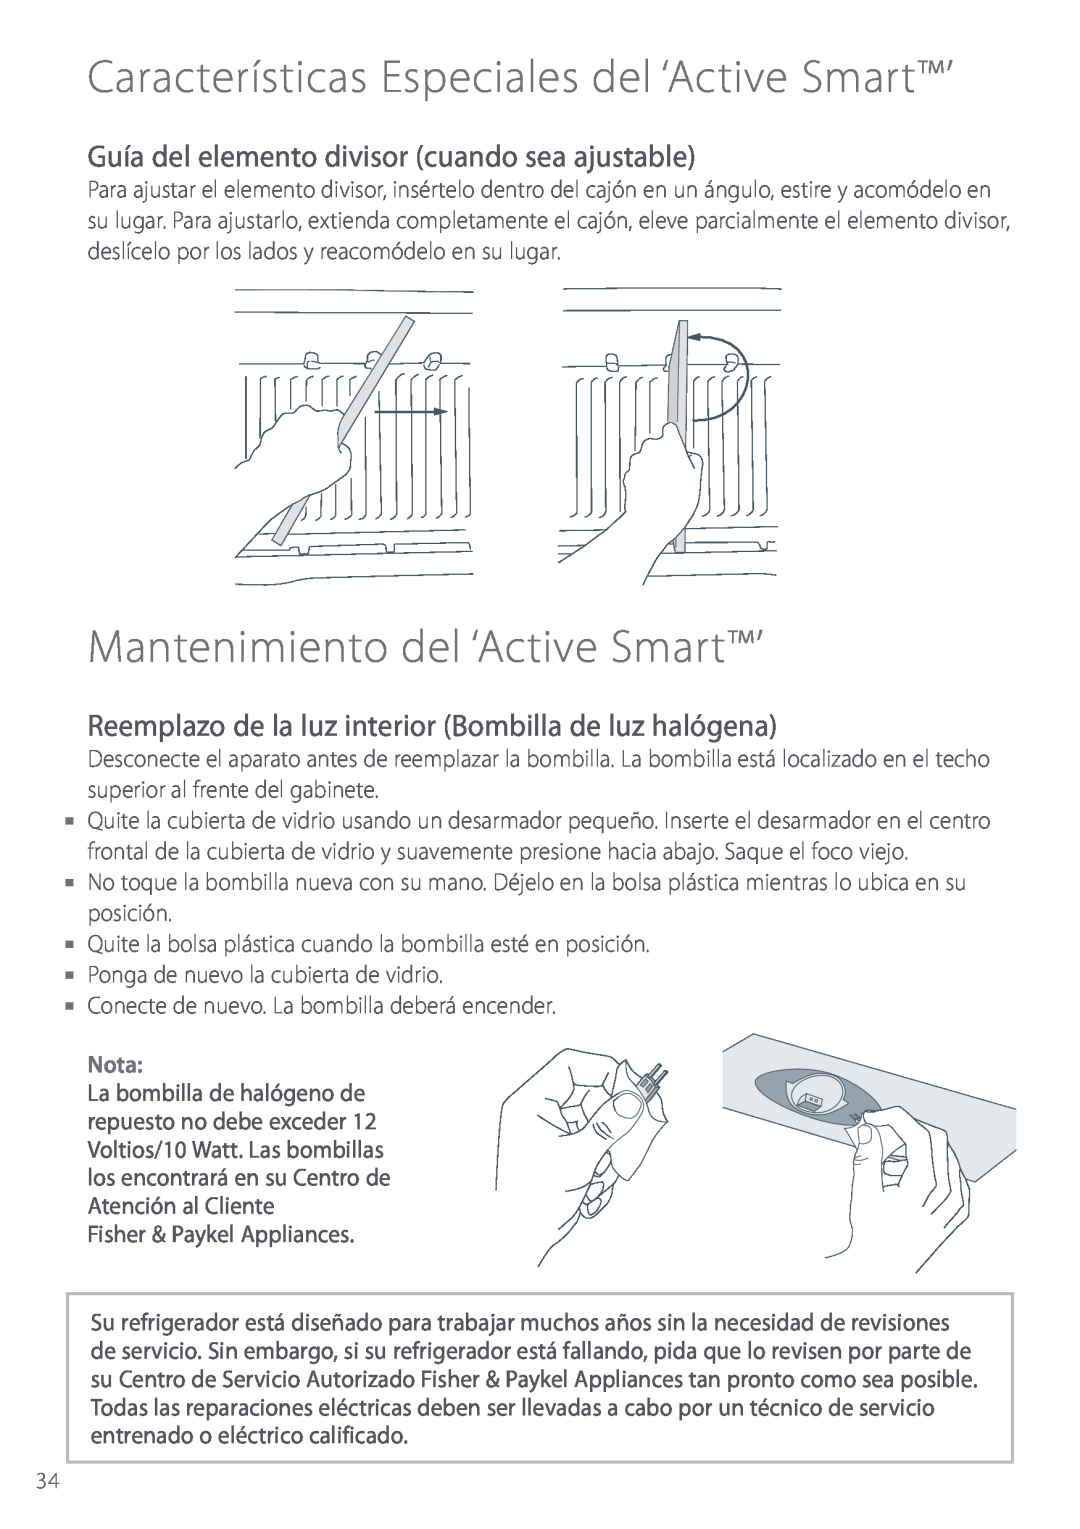 Fisher & Paykel manual Mantenimiento del ‘Active Smart’, Guía del elemento divisor cuando sea ajustable, Nota 